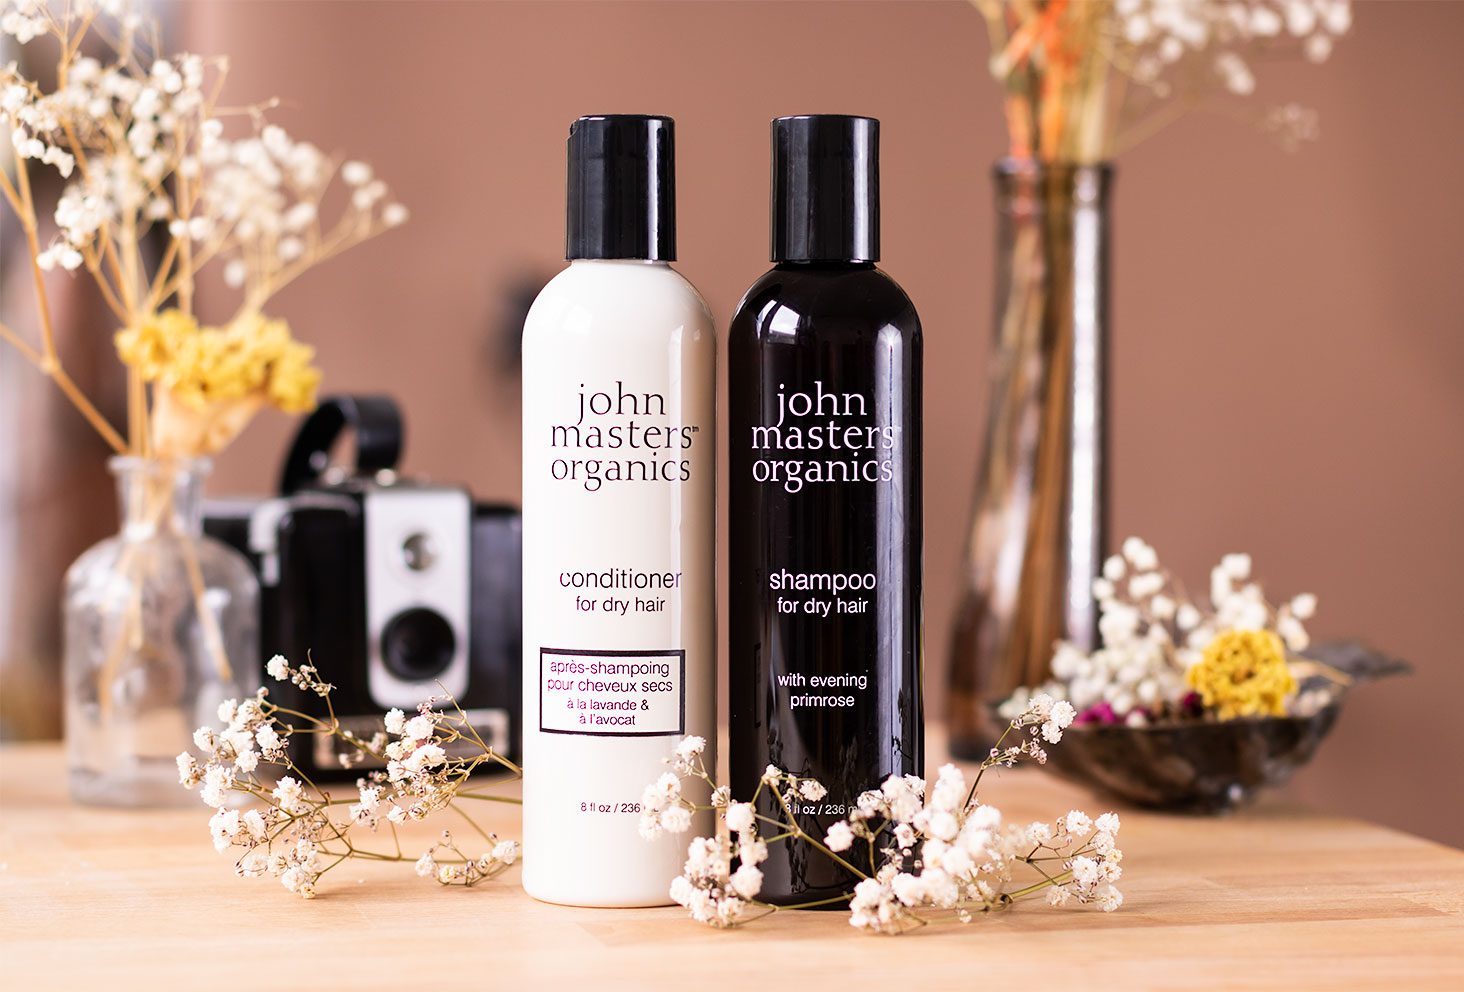 Le shampooing et l'après-shampooing pour cheveux secs de la marques John Masters Organics, posés sur un bureau au milieu de fleurs sèches et de décorations vintages